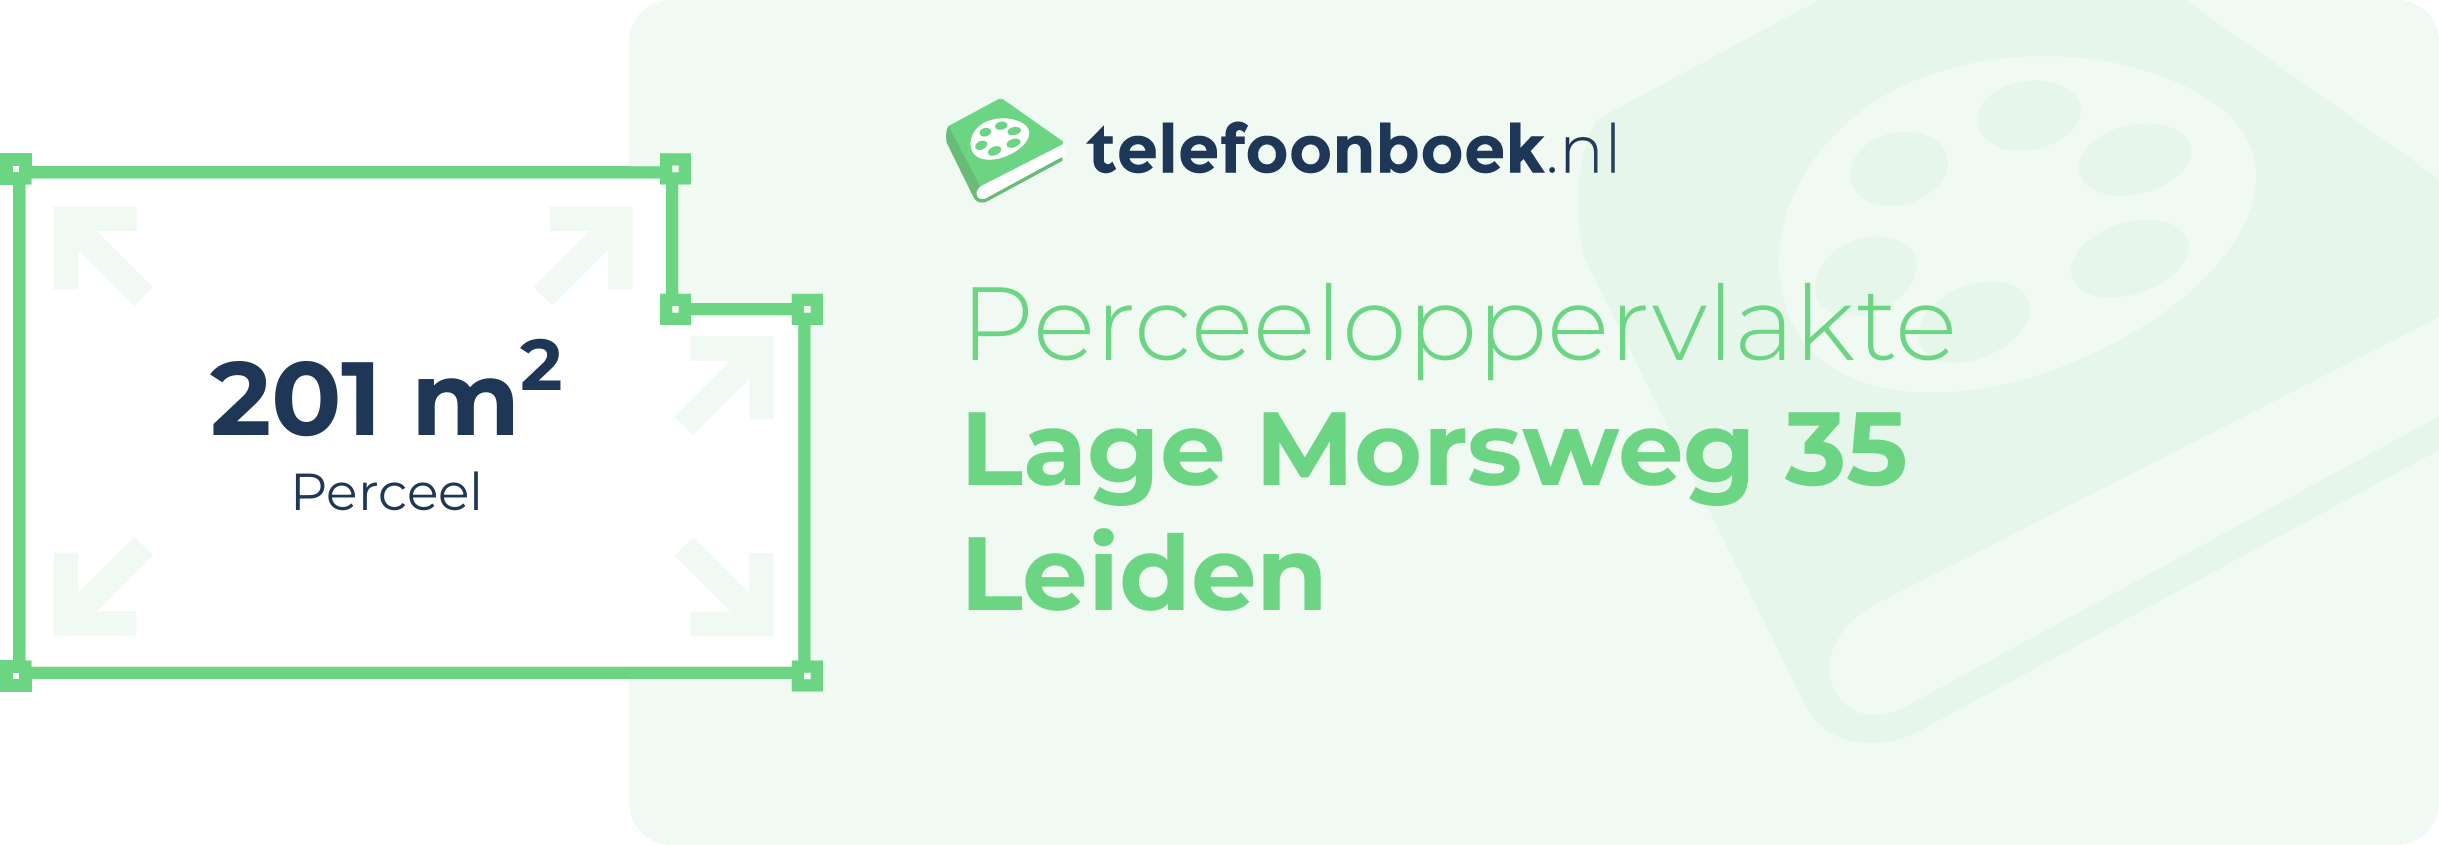 Perceeloppervlakte Lage Morsweg 35 Leiden